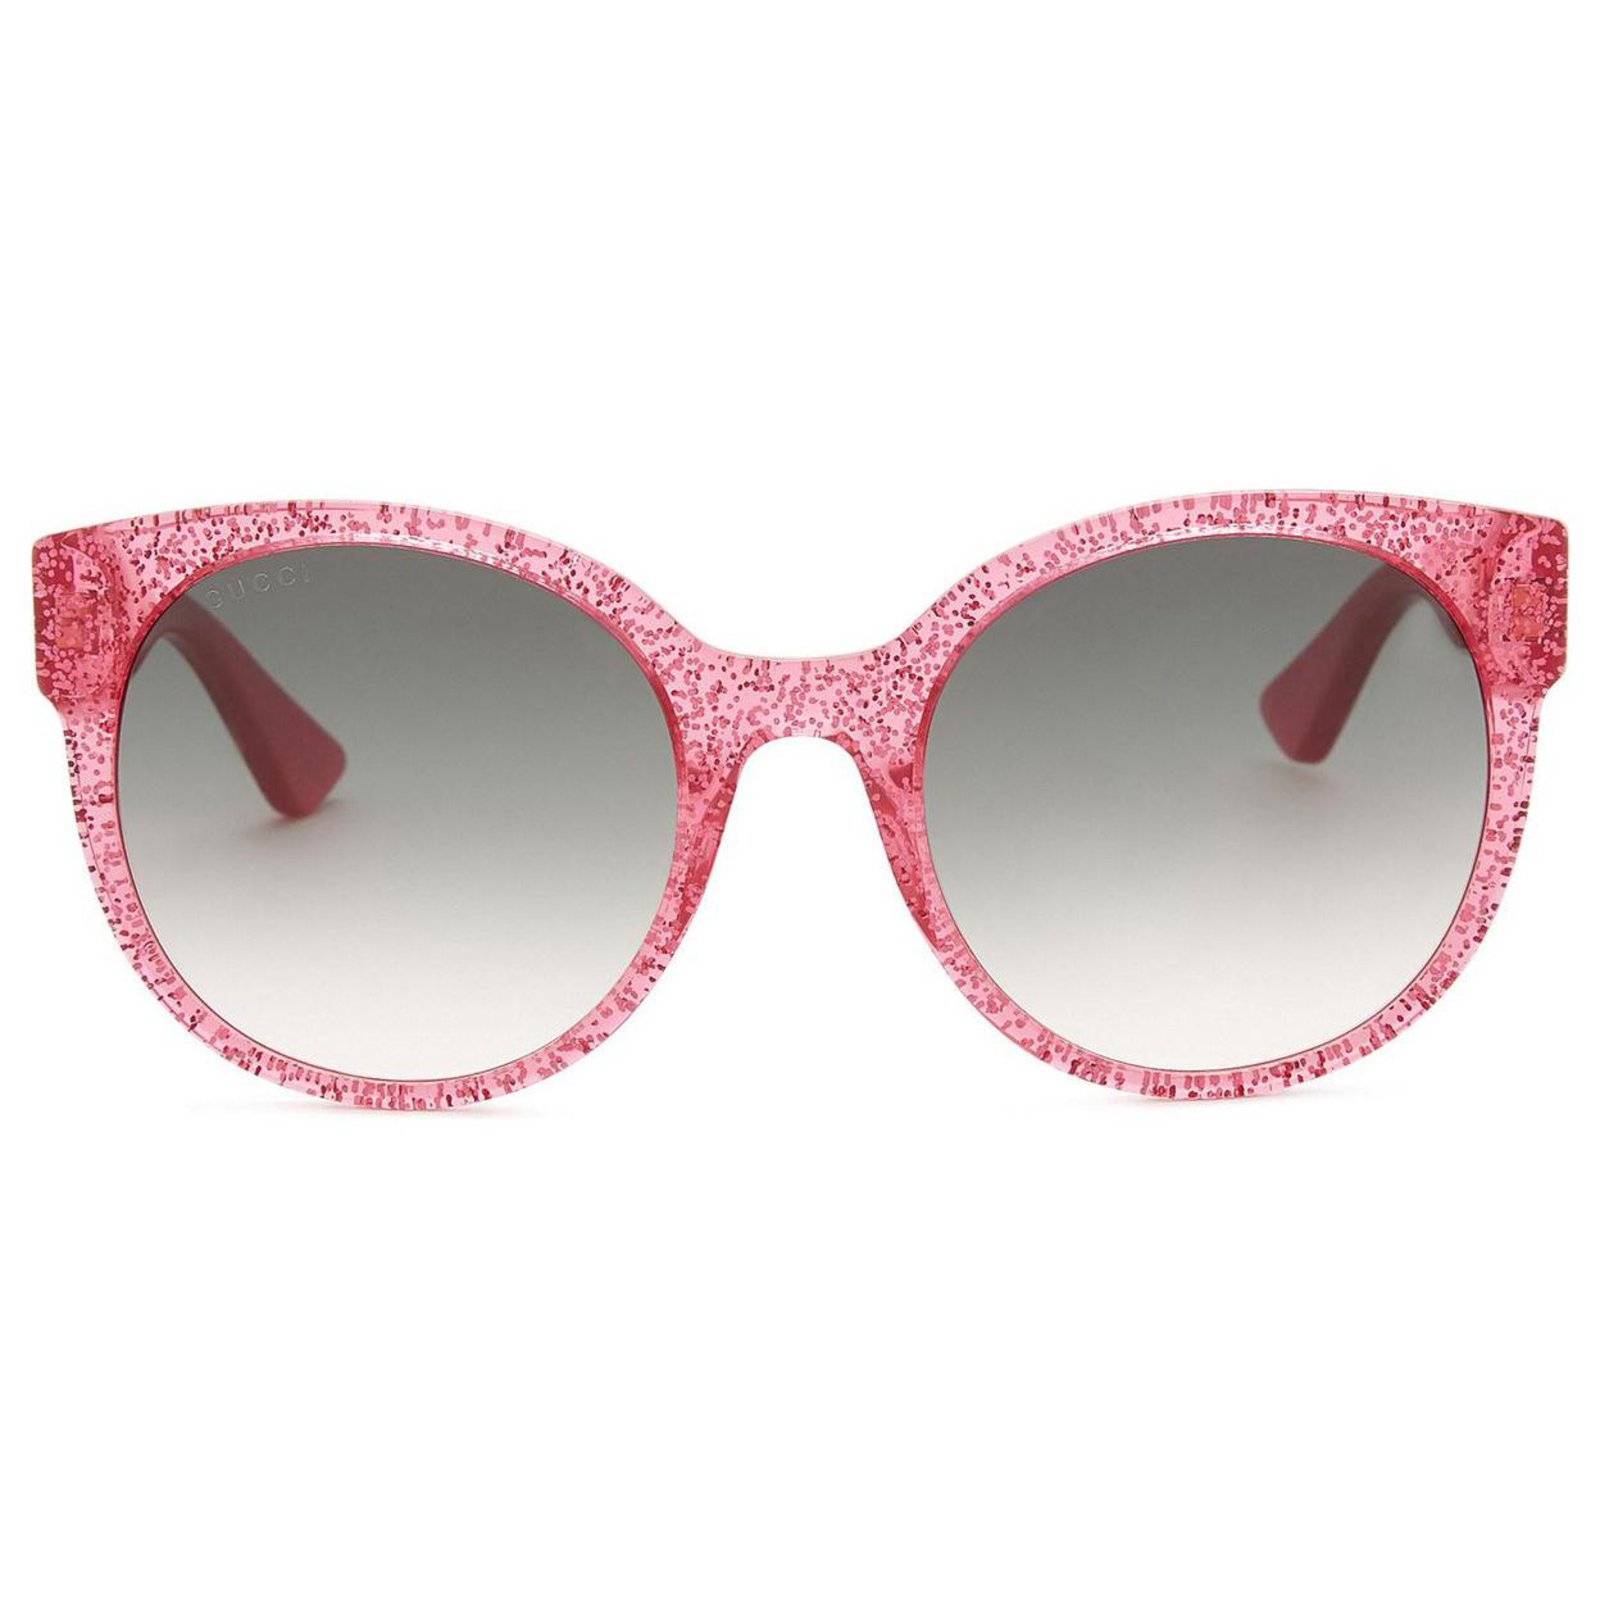 gucci glasses pink